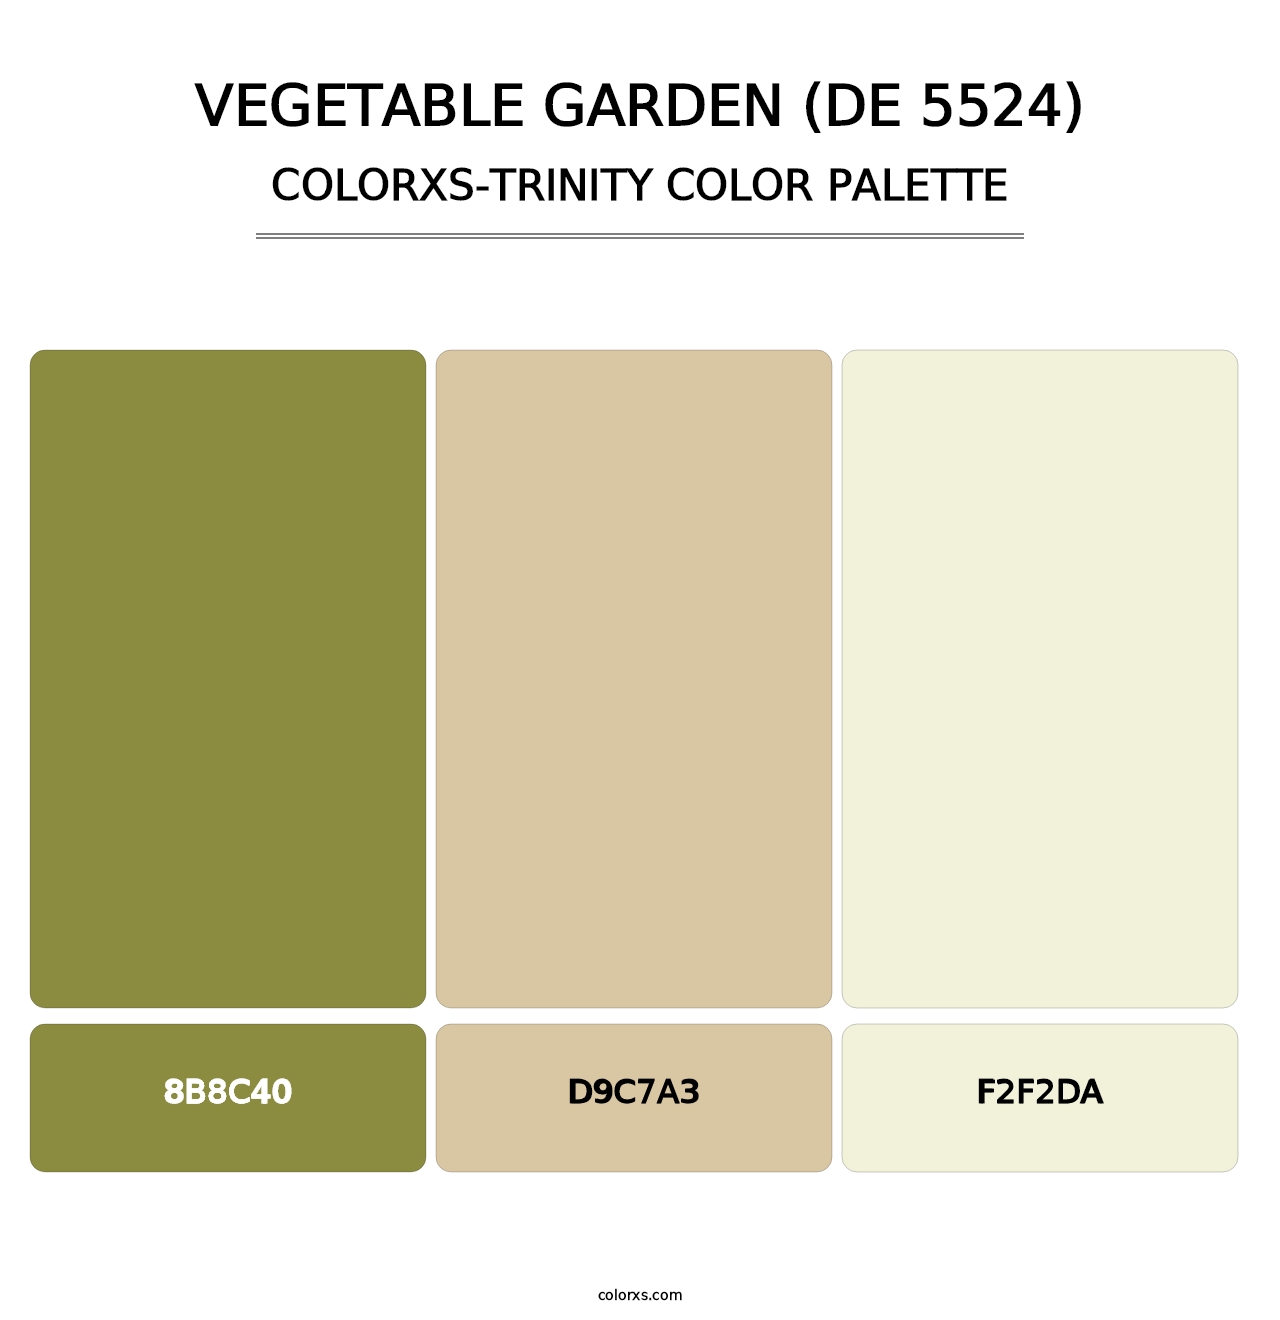 Vegetable Garden (DE 5524) - Colorxs Trinity Palette